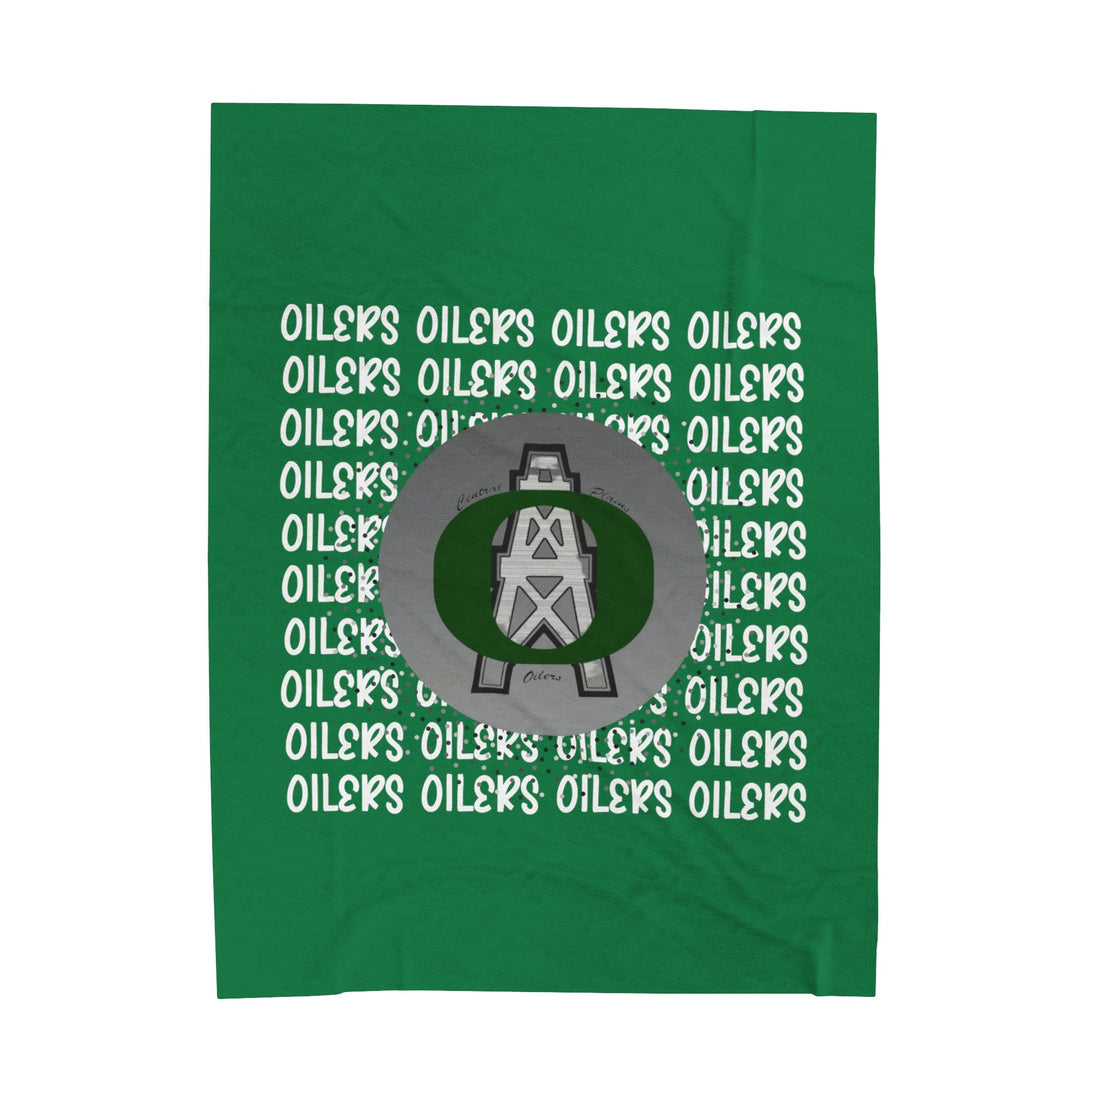 Oilers Repeat Velveteen Plush Blanket - All Over Prints - Positively Sassy - Oilers Repeat Velveteen Plush Blanket